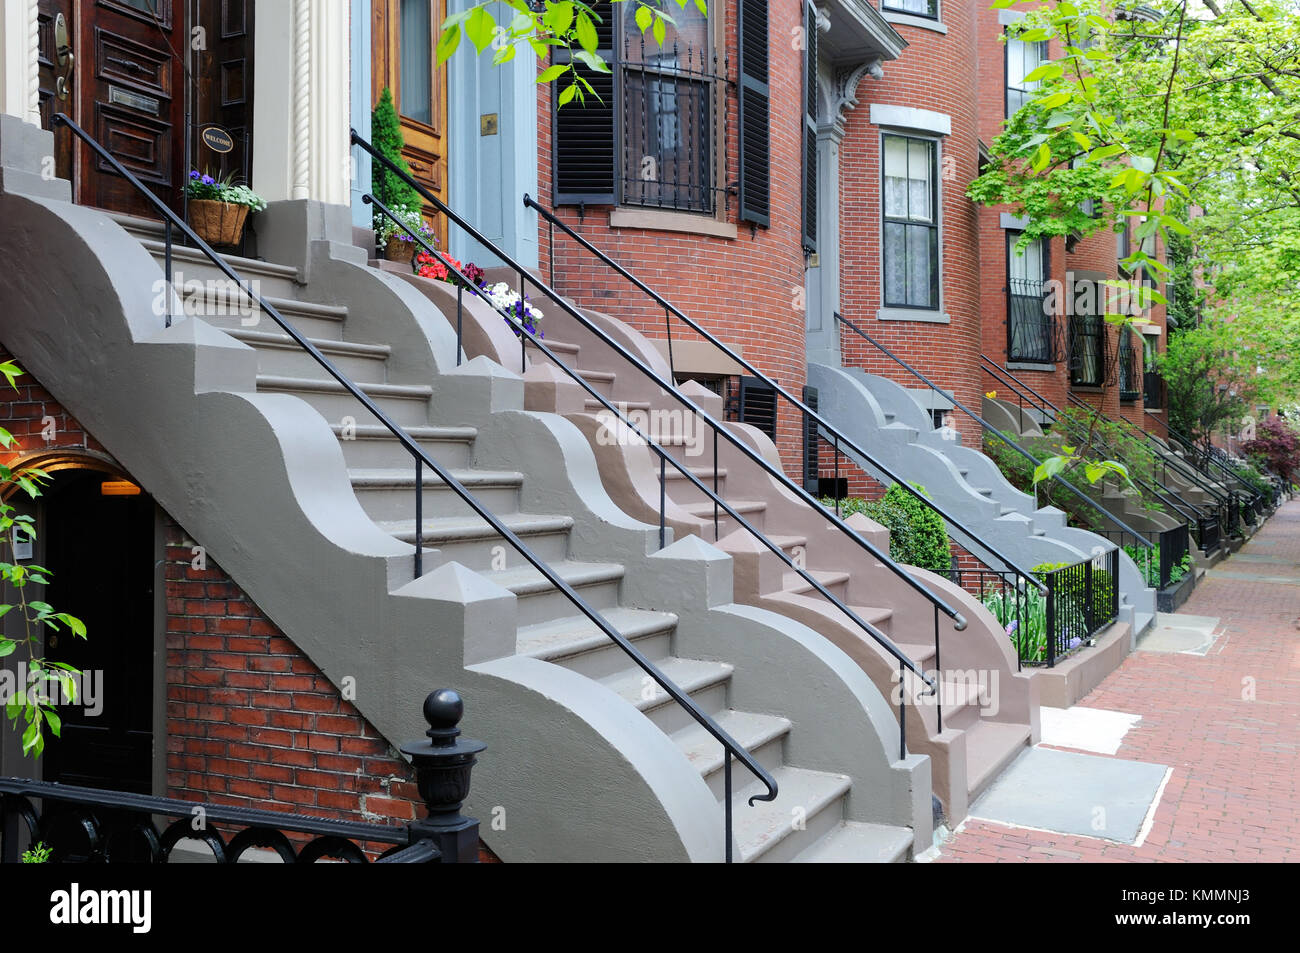 South End, Boston viktorianischen Reihenhäusern. Brick aparment Häuser und Bürgersteige, bunte Schritte mit gewellten Stein Verkleidung, gusseisernen Geländer und Zäune, un Stockfoto